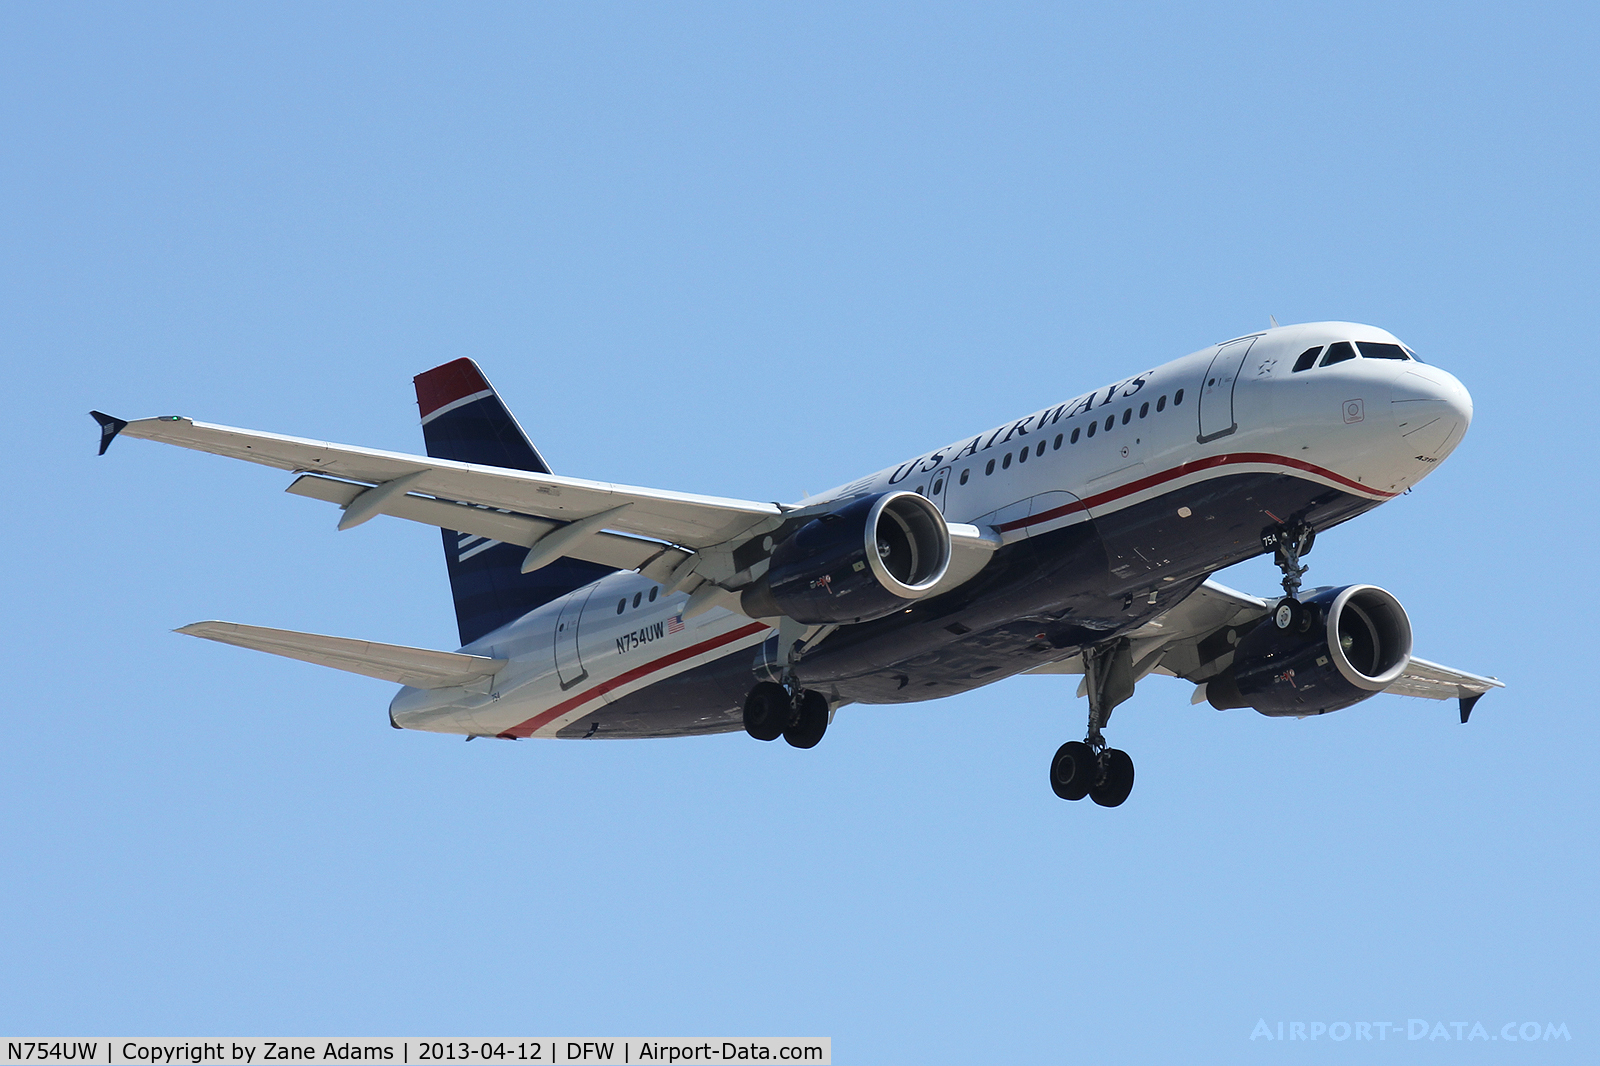 N754UW, 2000 Airbus A319-112 C/N 1328, US Airways landing at DFW Airport